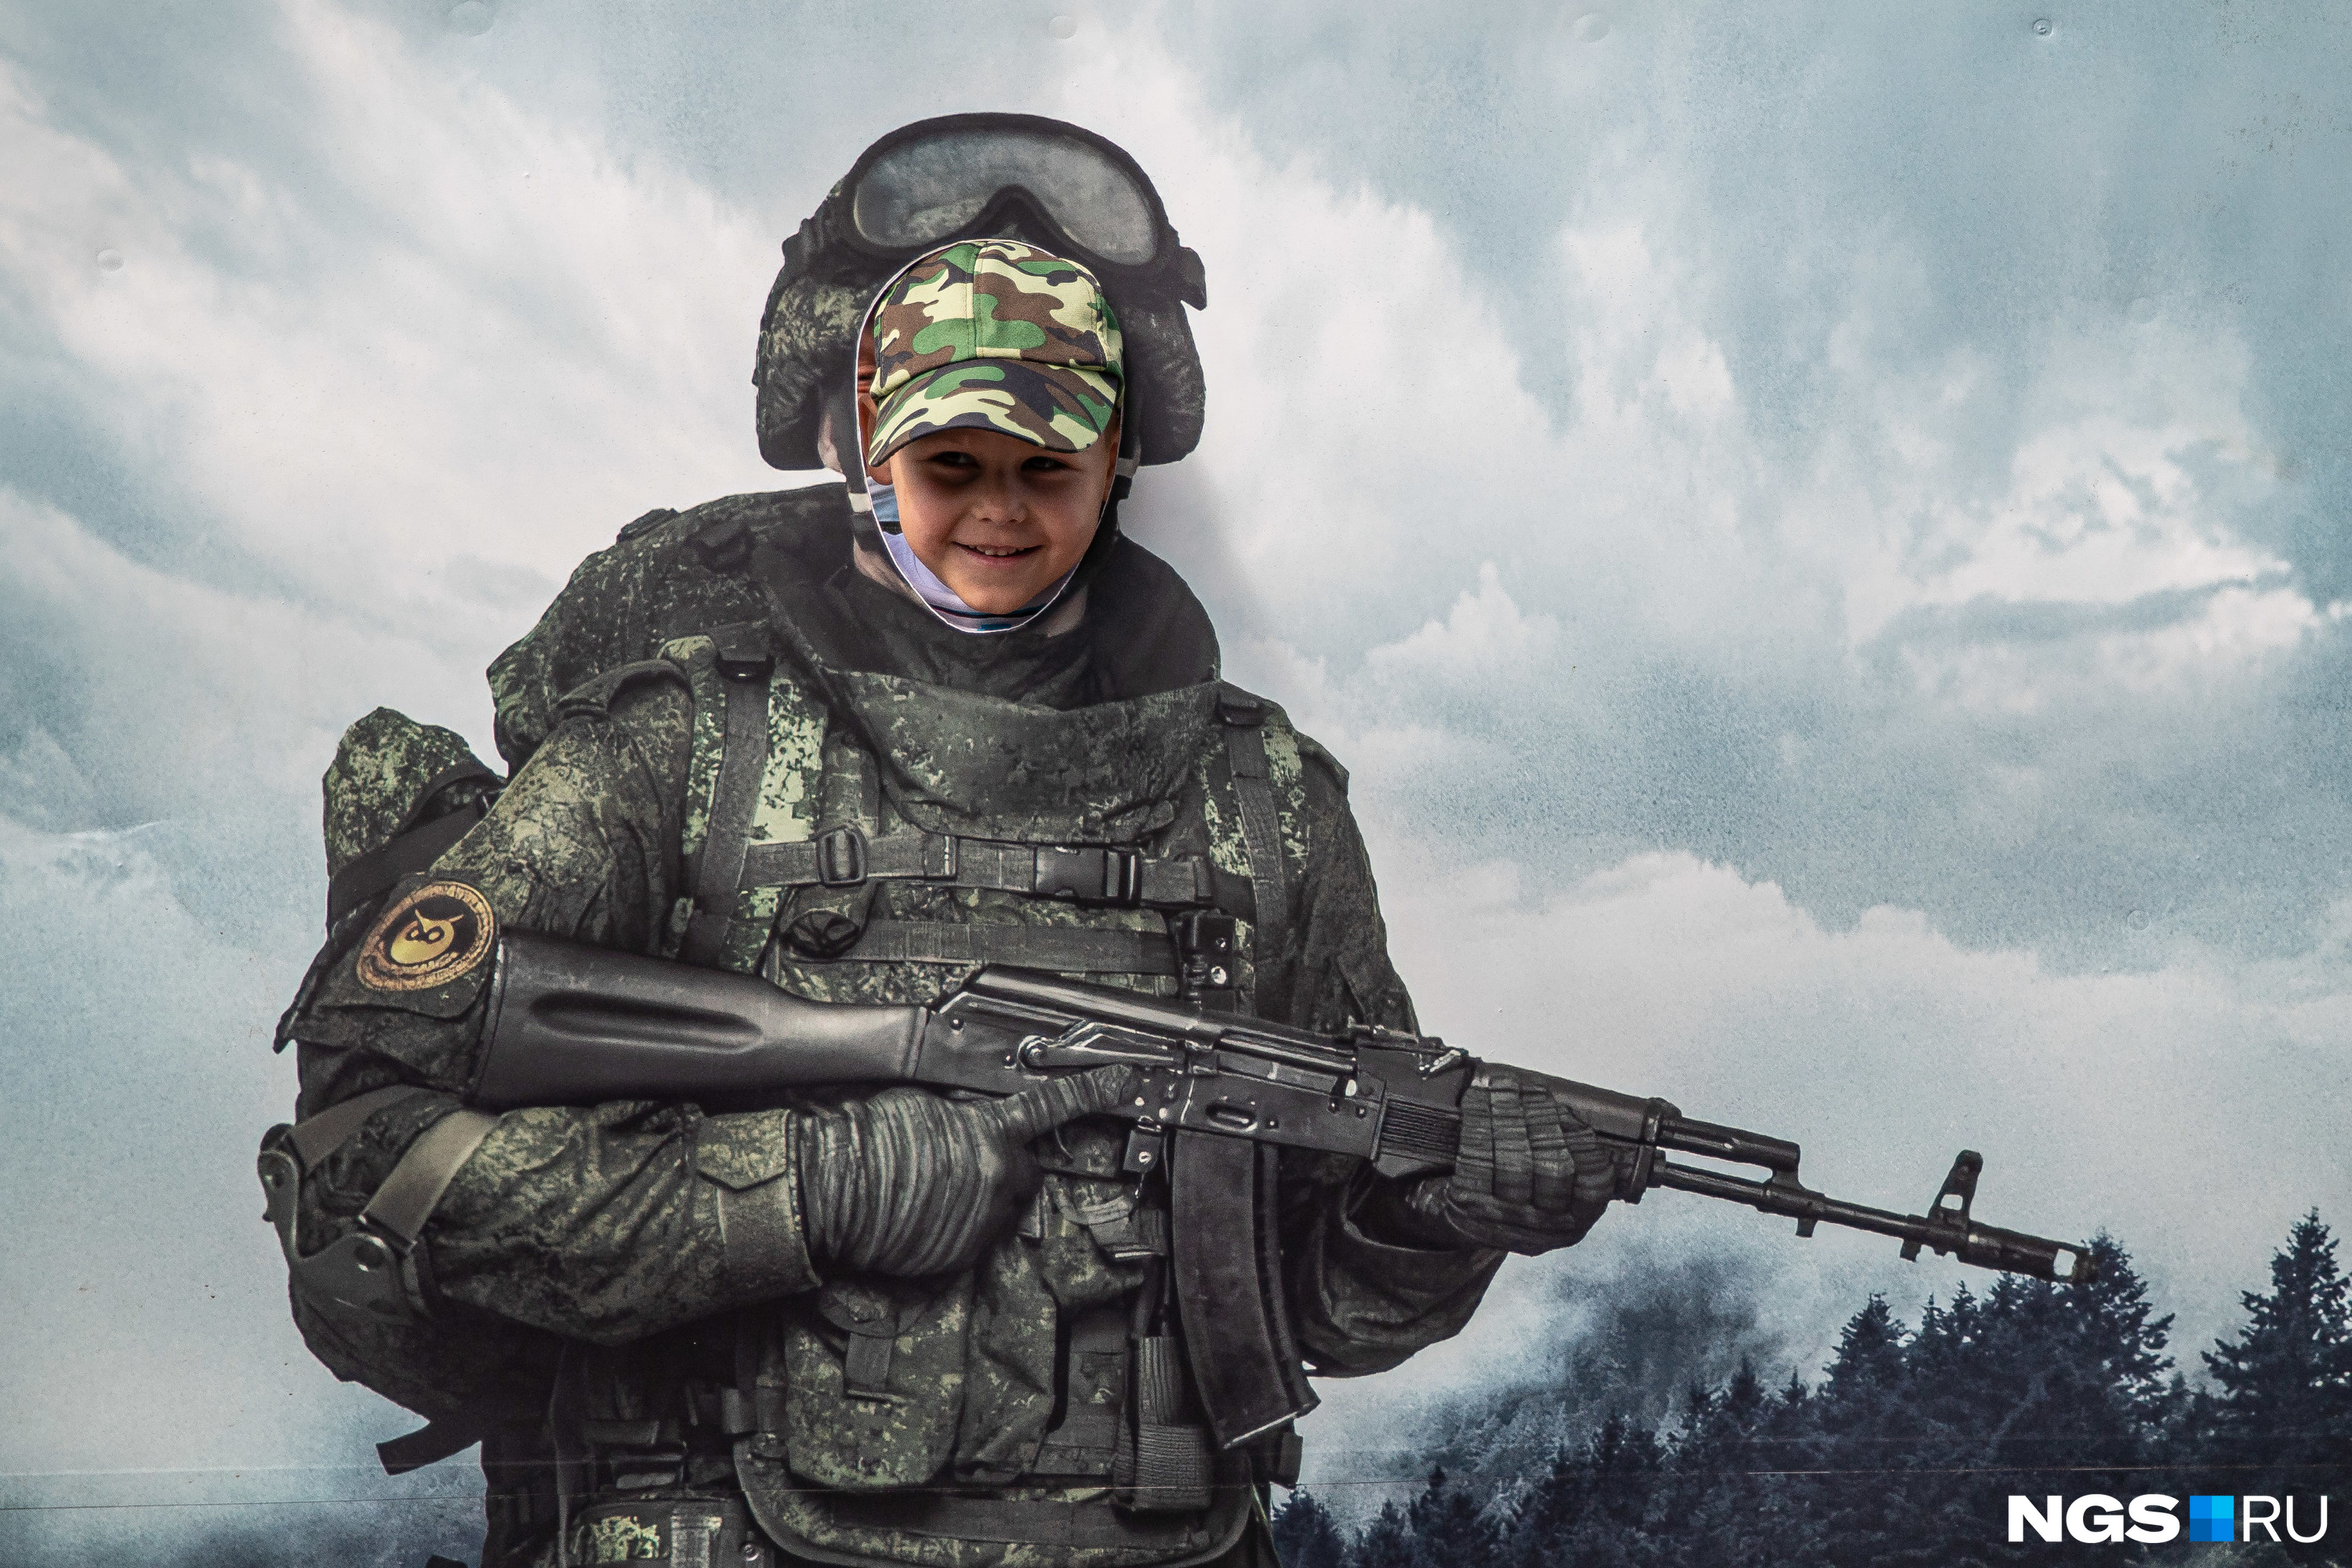 Примерить форму российского солдата можно было хотя бы на фотографии